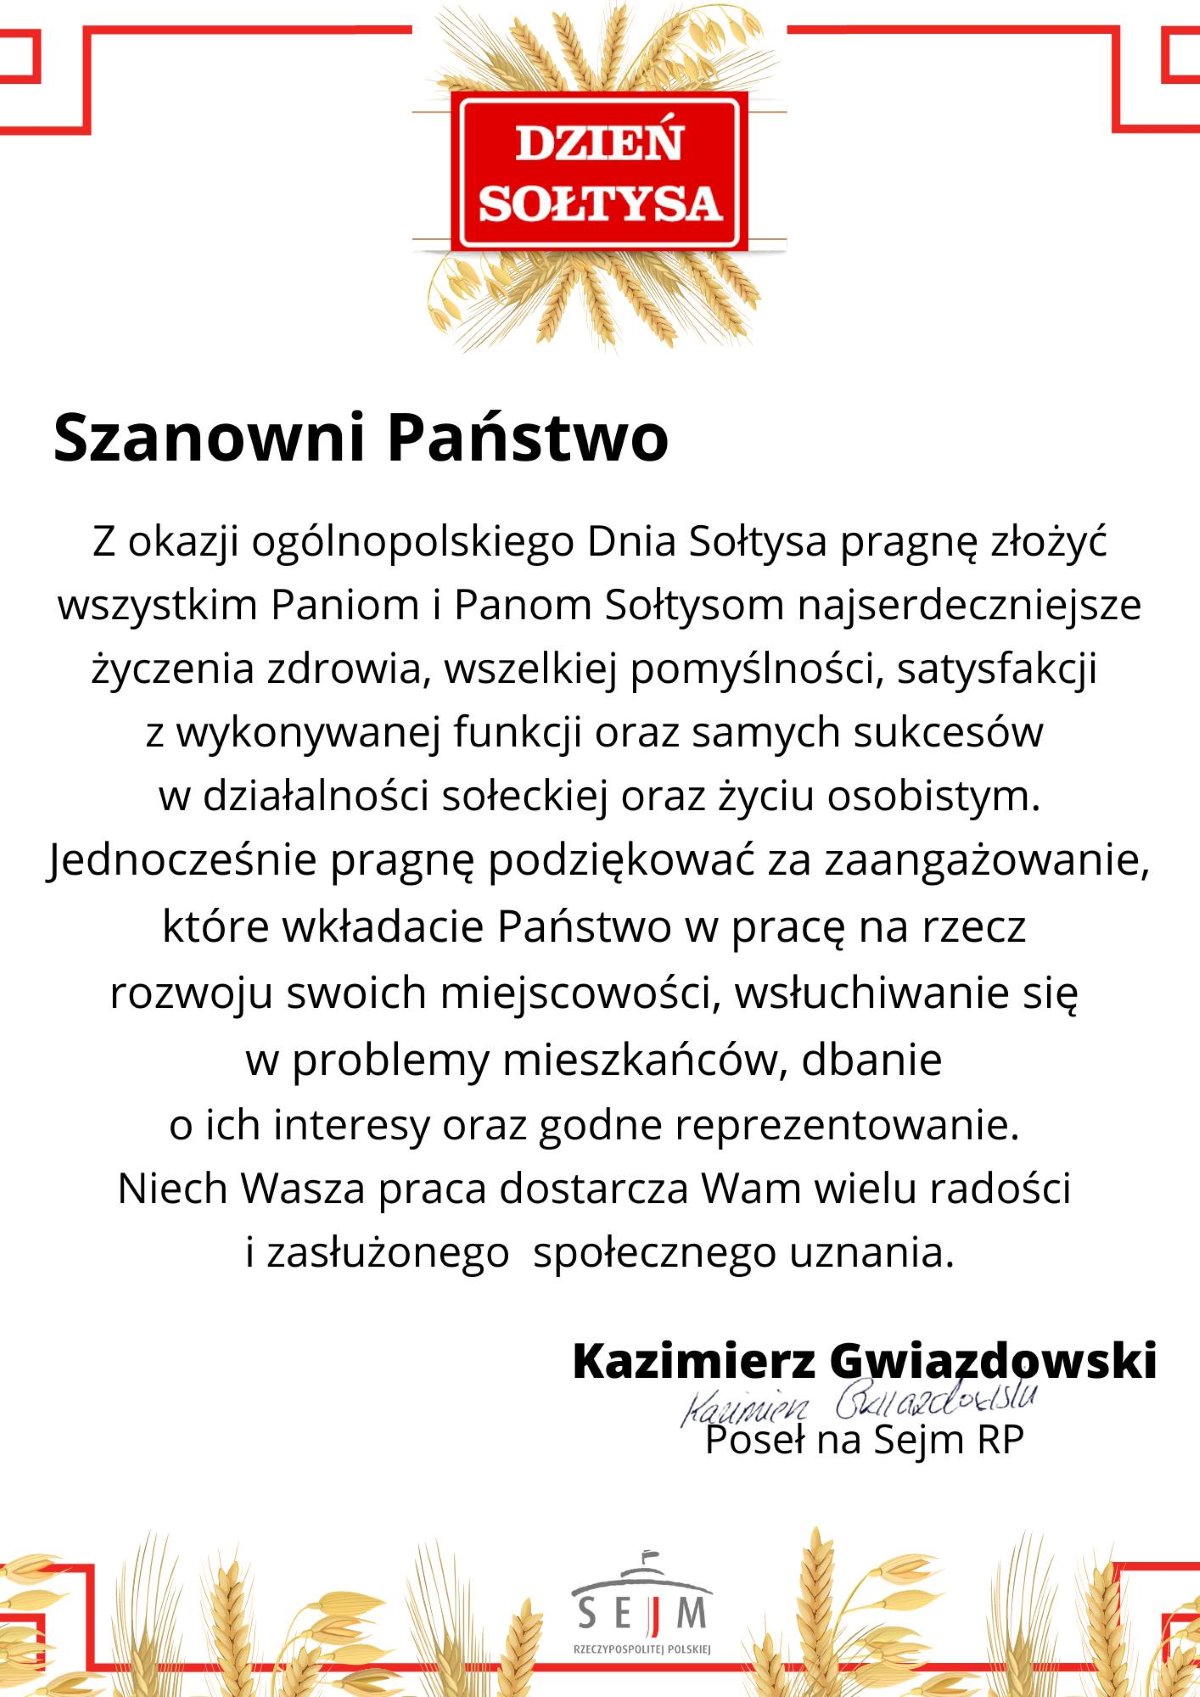 Życzenia Posła na Sejm RP Kazimierza Gwiazdowskiego z okazji Dnia Sołtysa